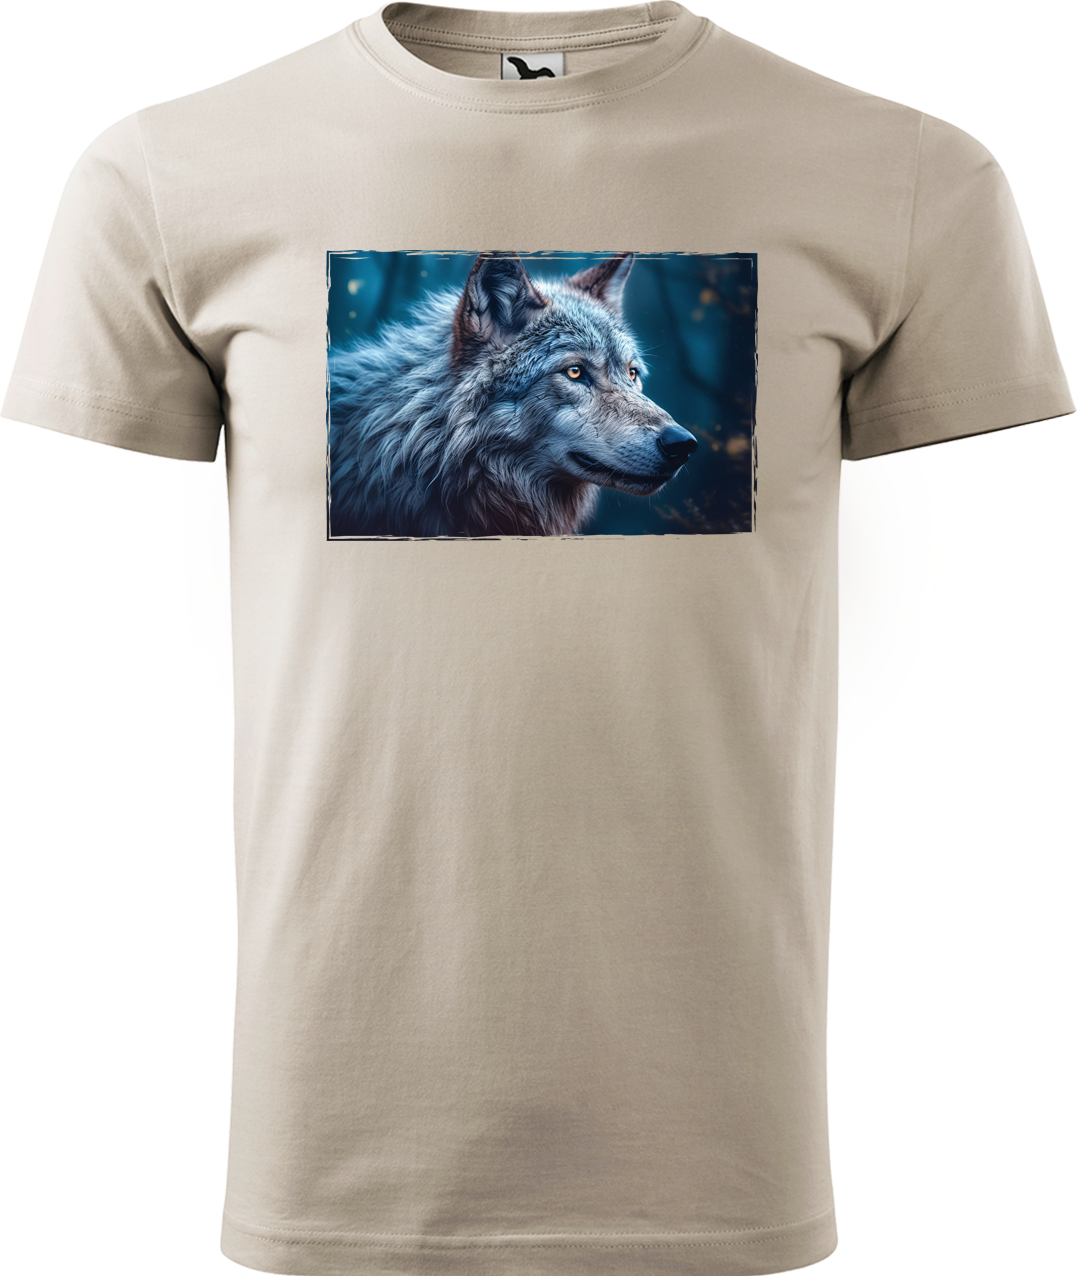 Pánské tričko s vlkem - Modrý vlk Velikost: M, Barva: Béžová (51)